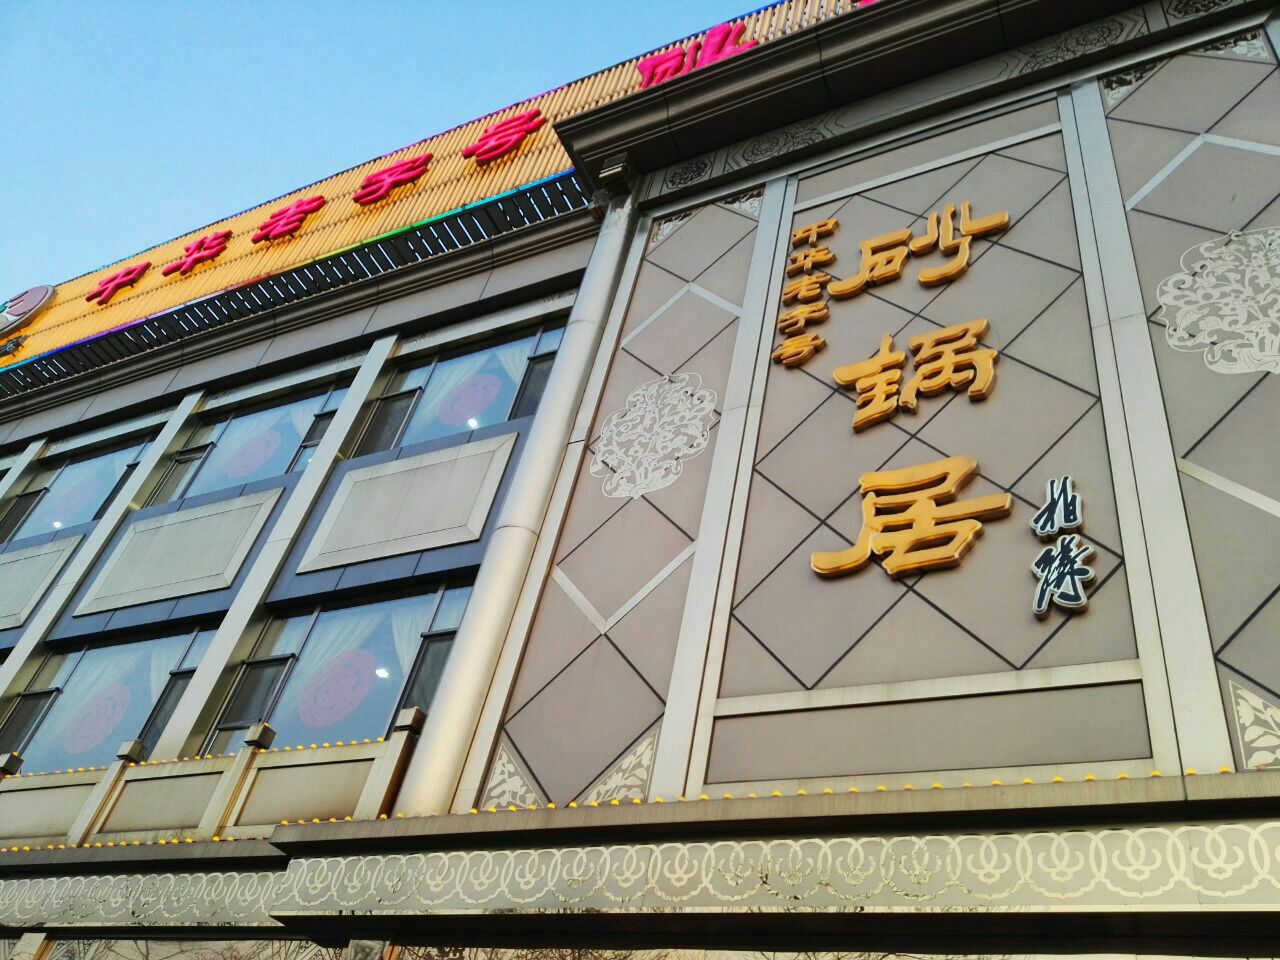 如果是到北京旅游的外地人,一定要品尝纯正的老北京风味的菜,砂锅居